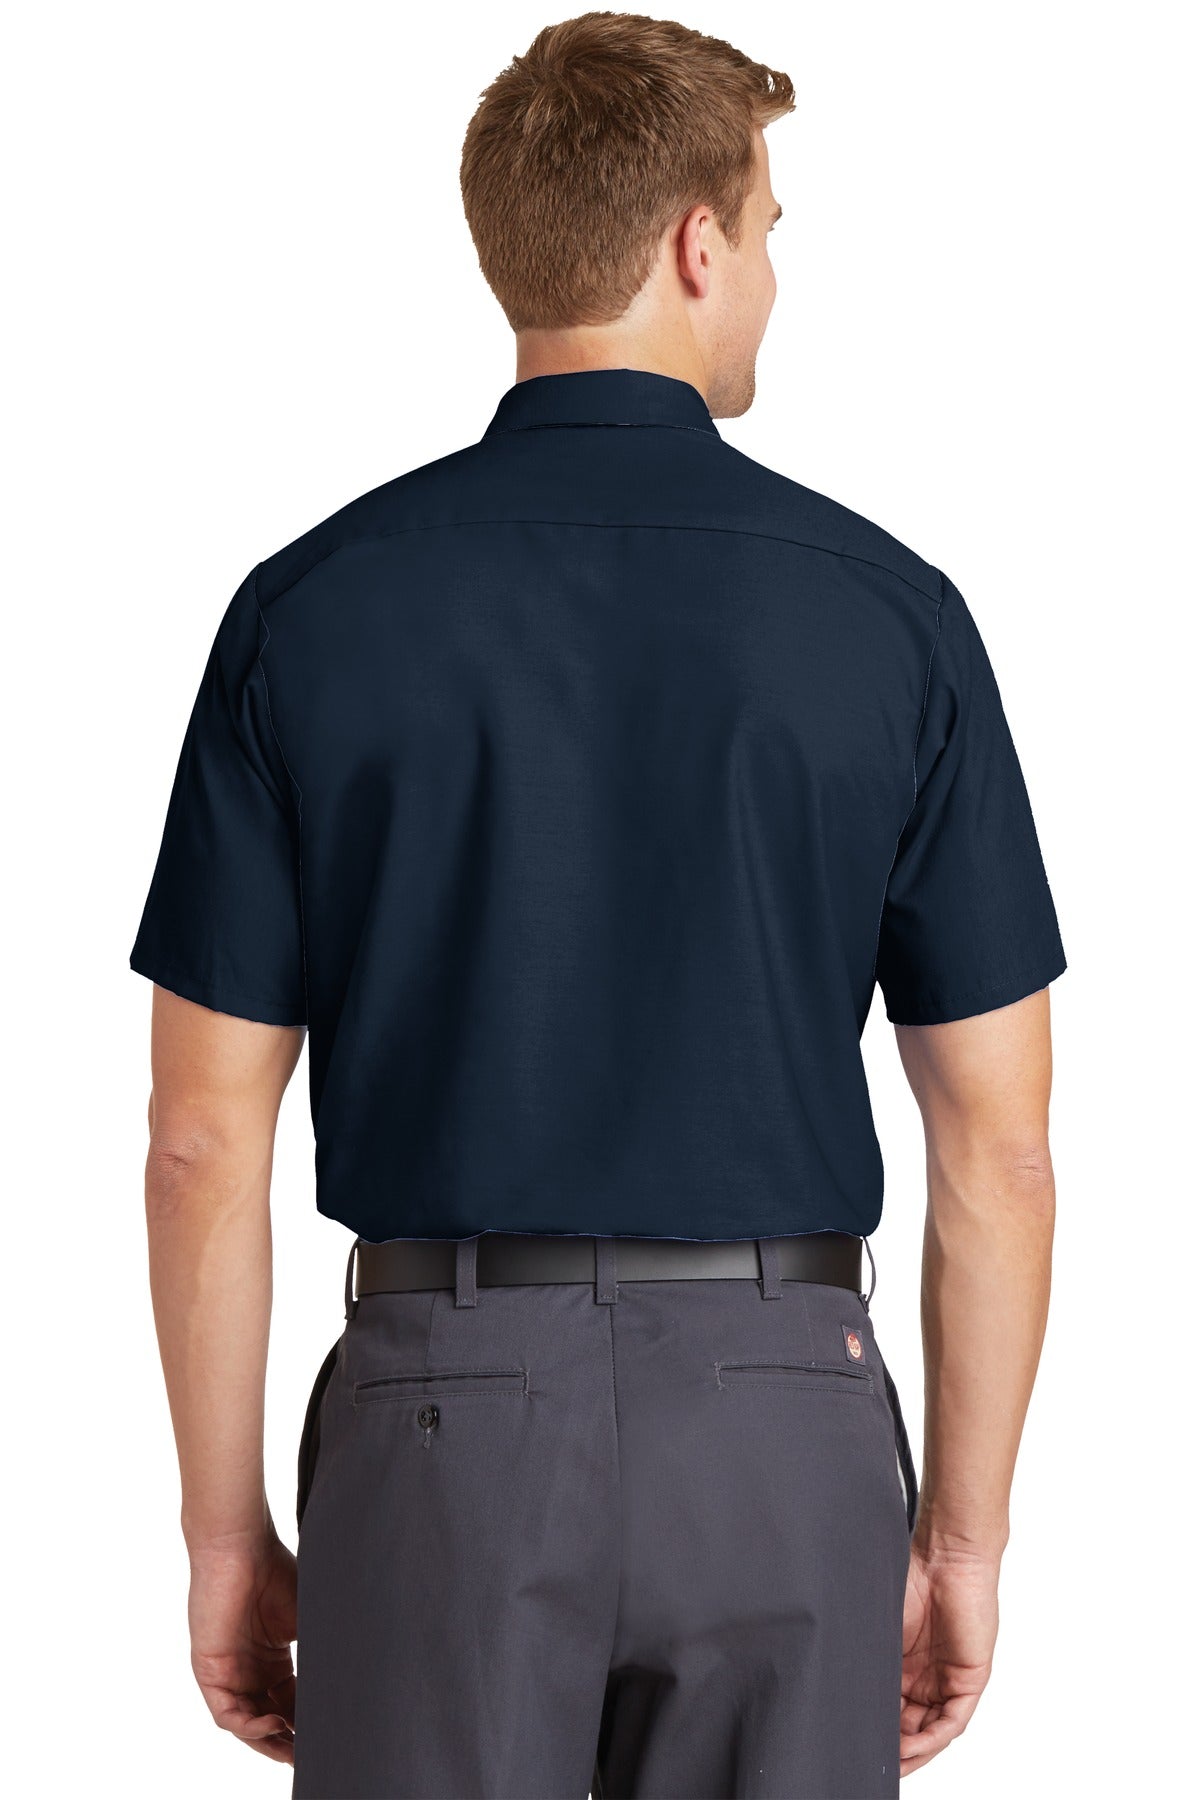 Red Kap Short Sleeve Industrial Work Shirt. SP24